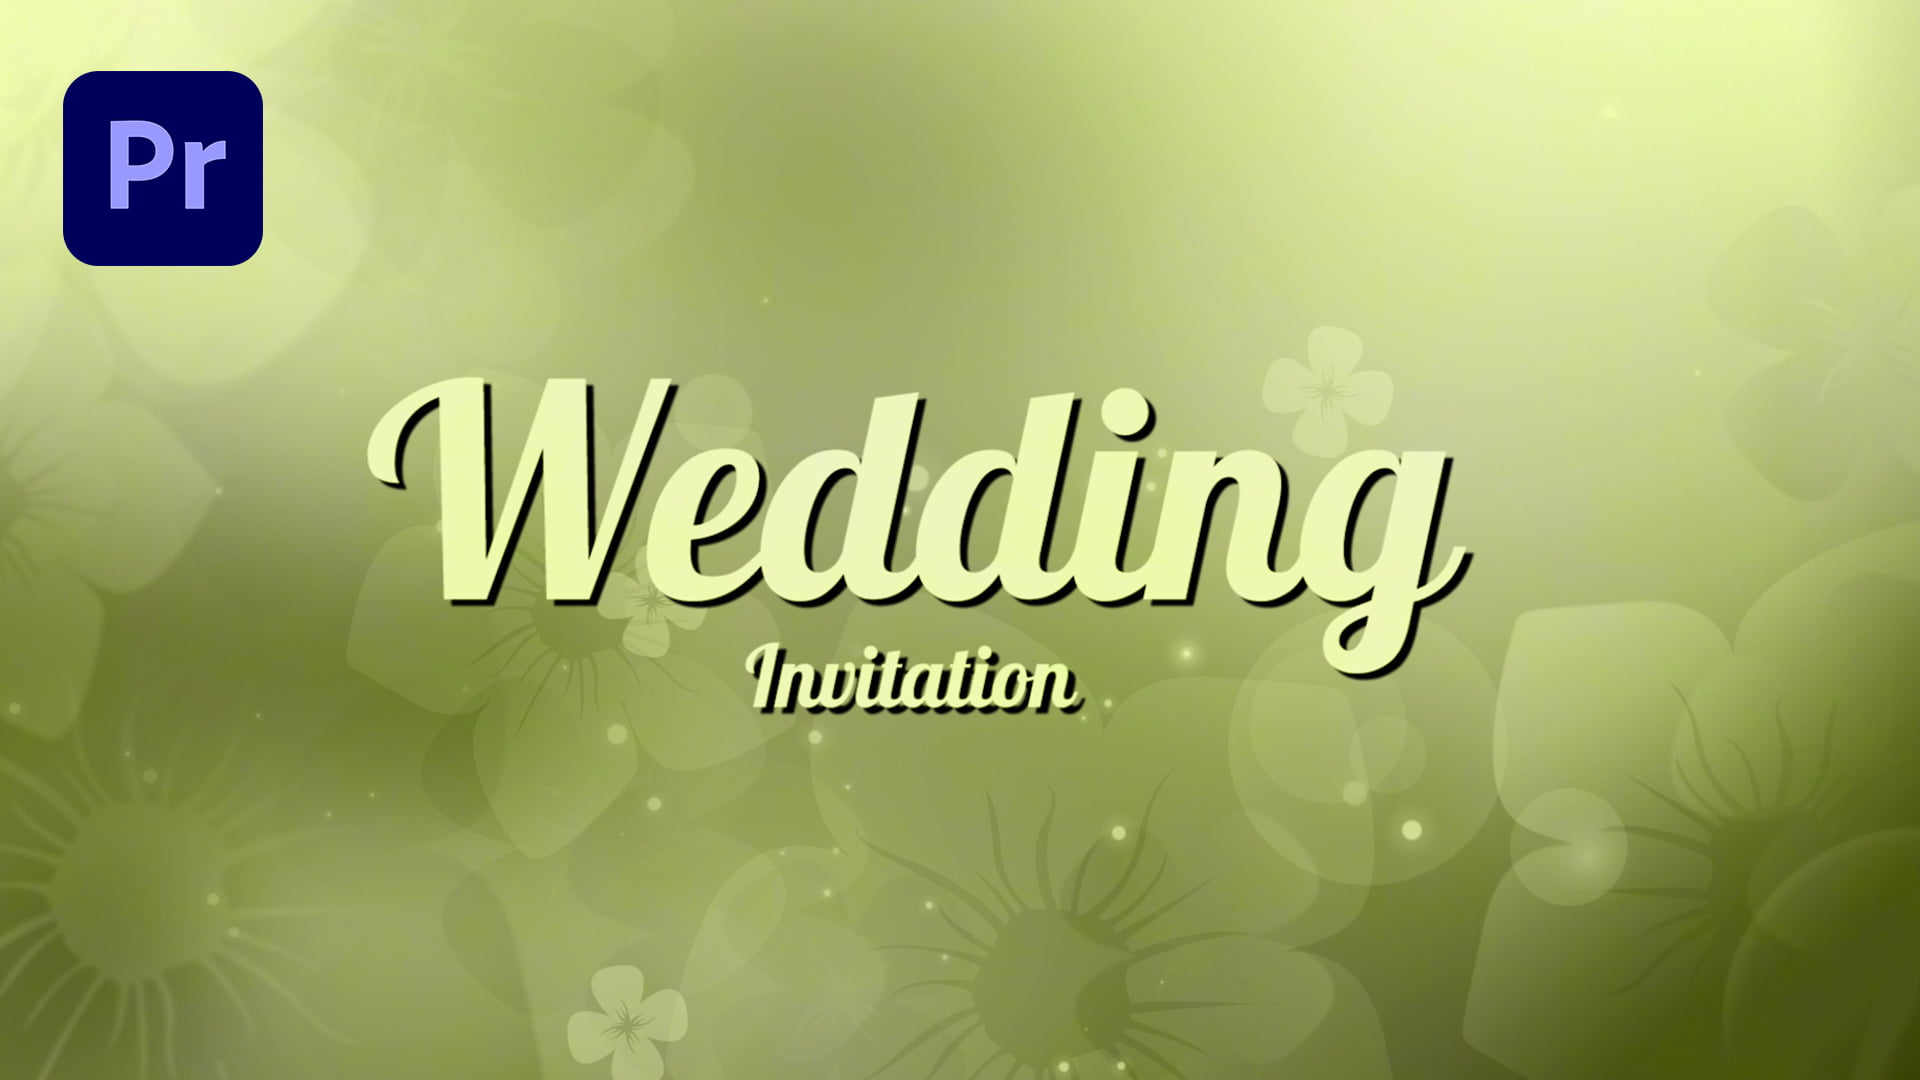 premiere-pro-wedding-invitation-templates-free-download